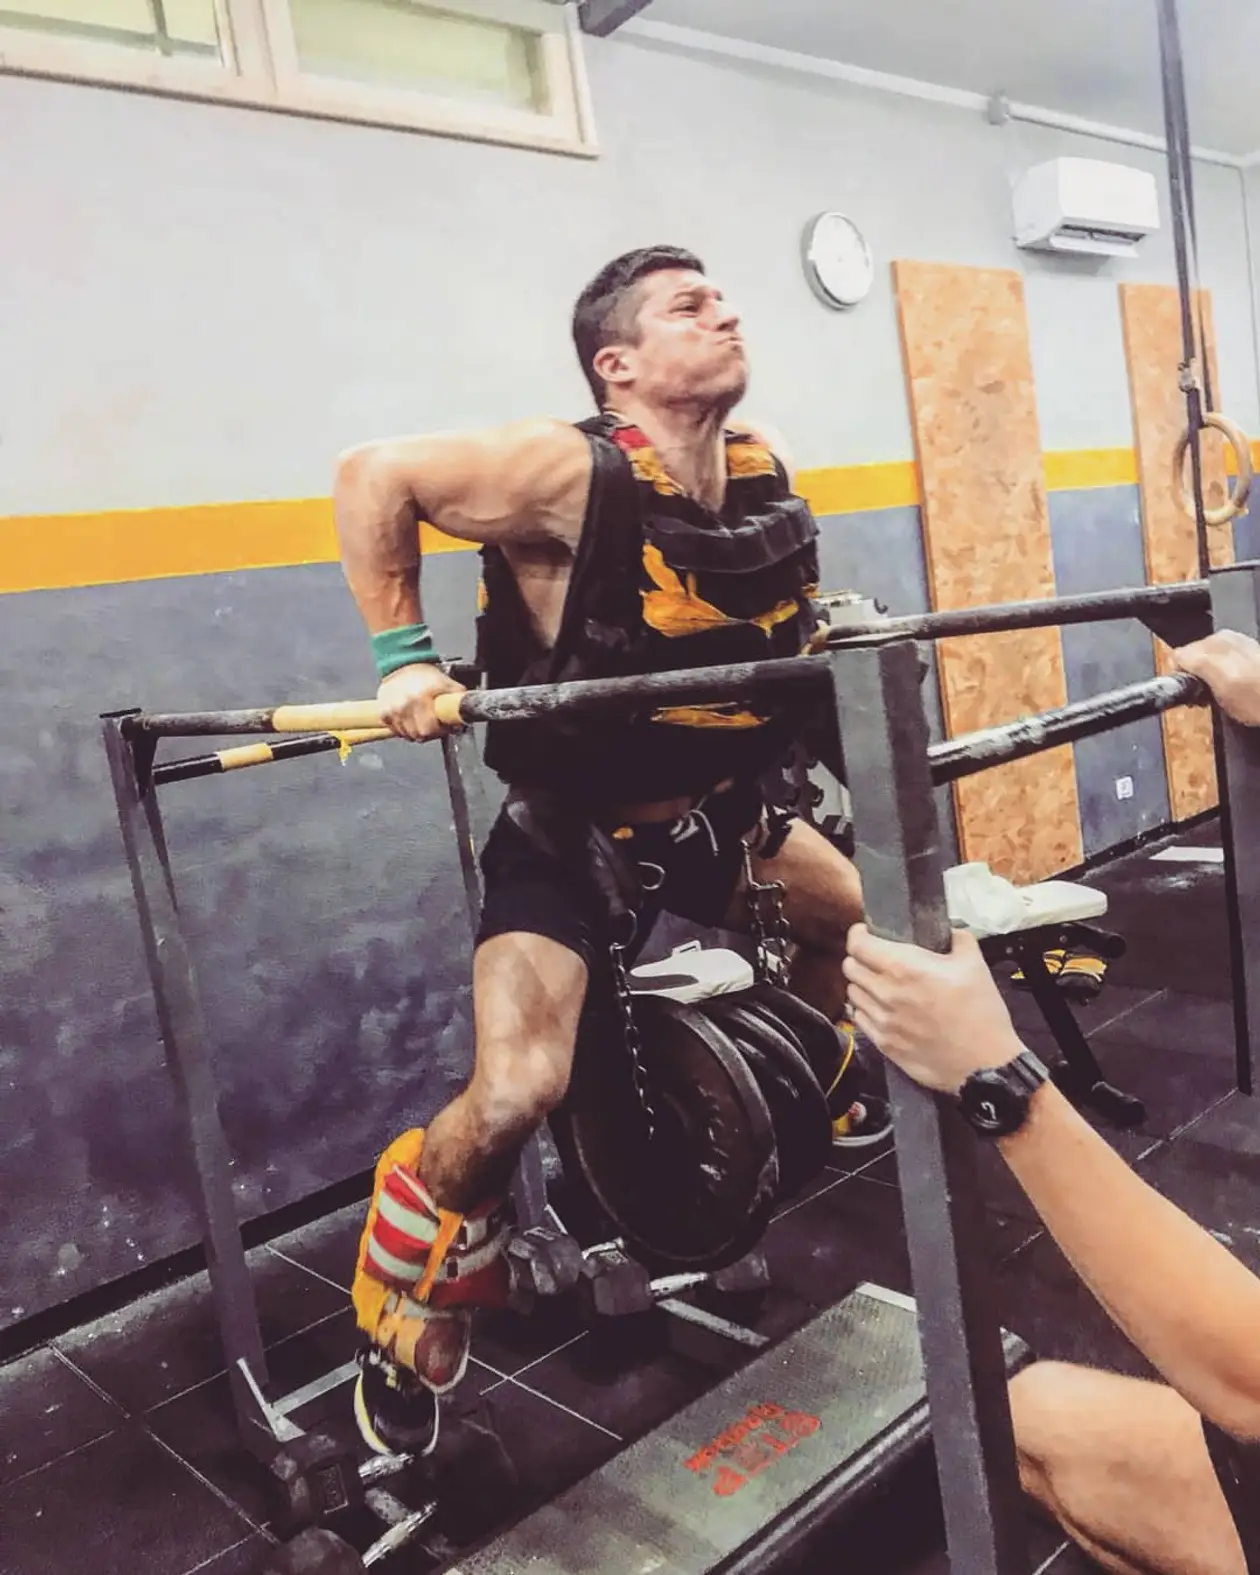 Секреты тренировок суставов от итальянского суперчеловека. Поднимает огромные веса в кривой технике, в чем смысл?